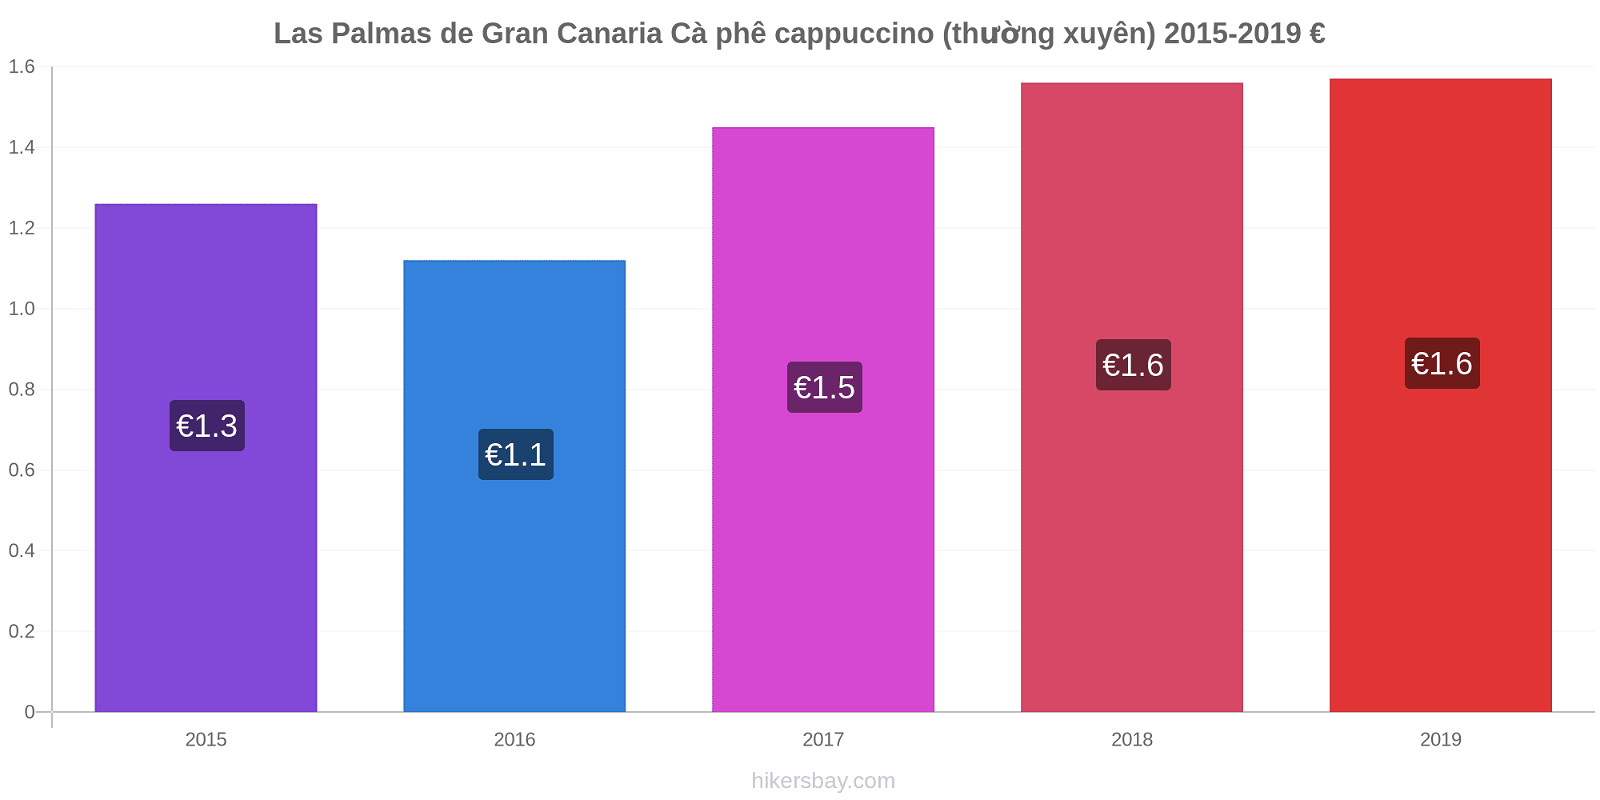 Las Palmas de Gran Canaria thay đổi giá Cà phê cappuccino (thường xuyên) hikersbay.com